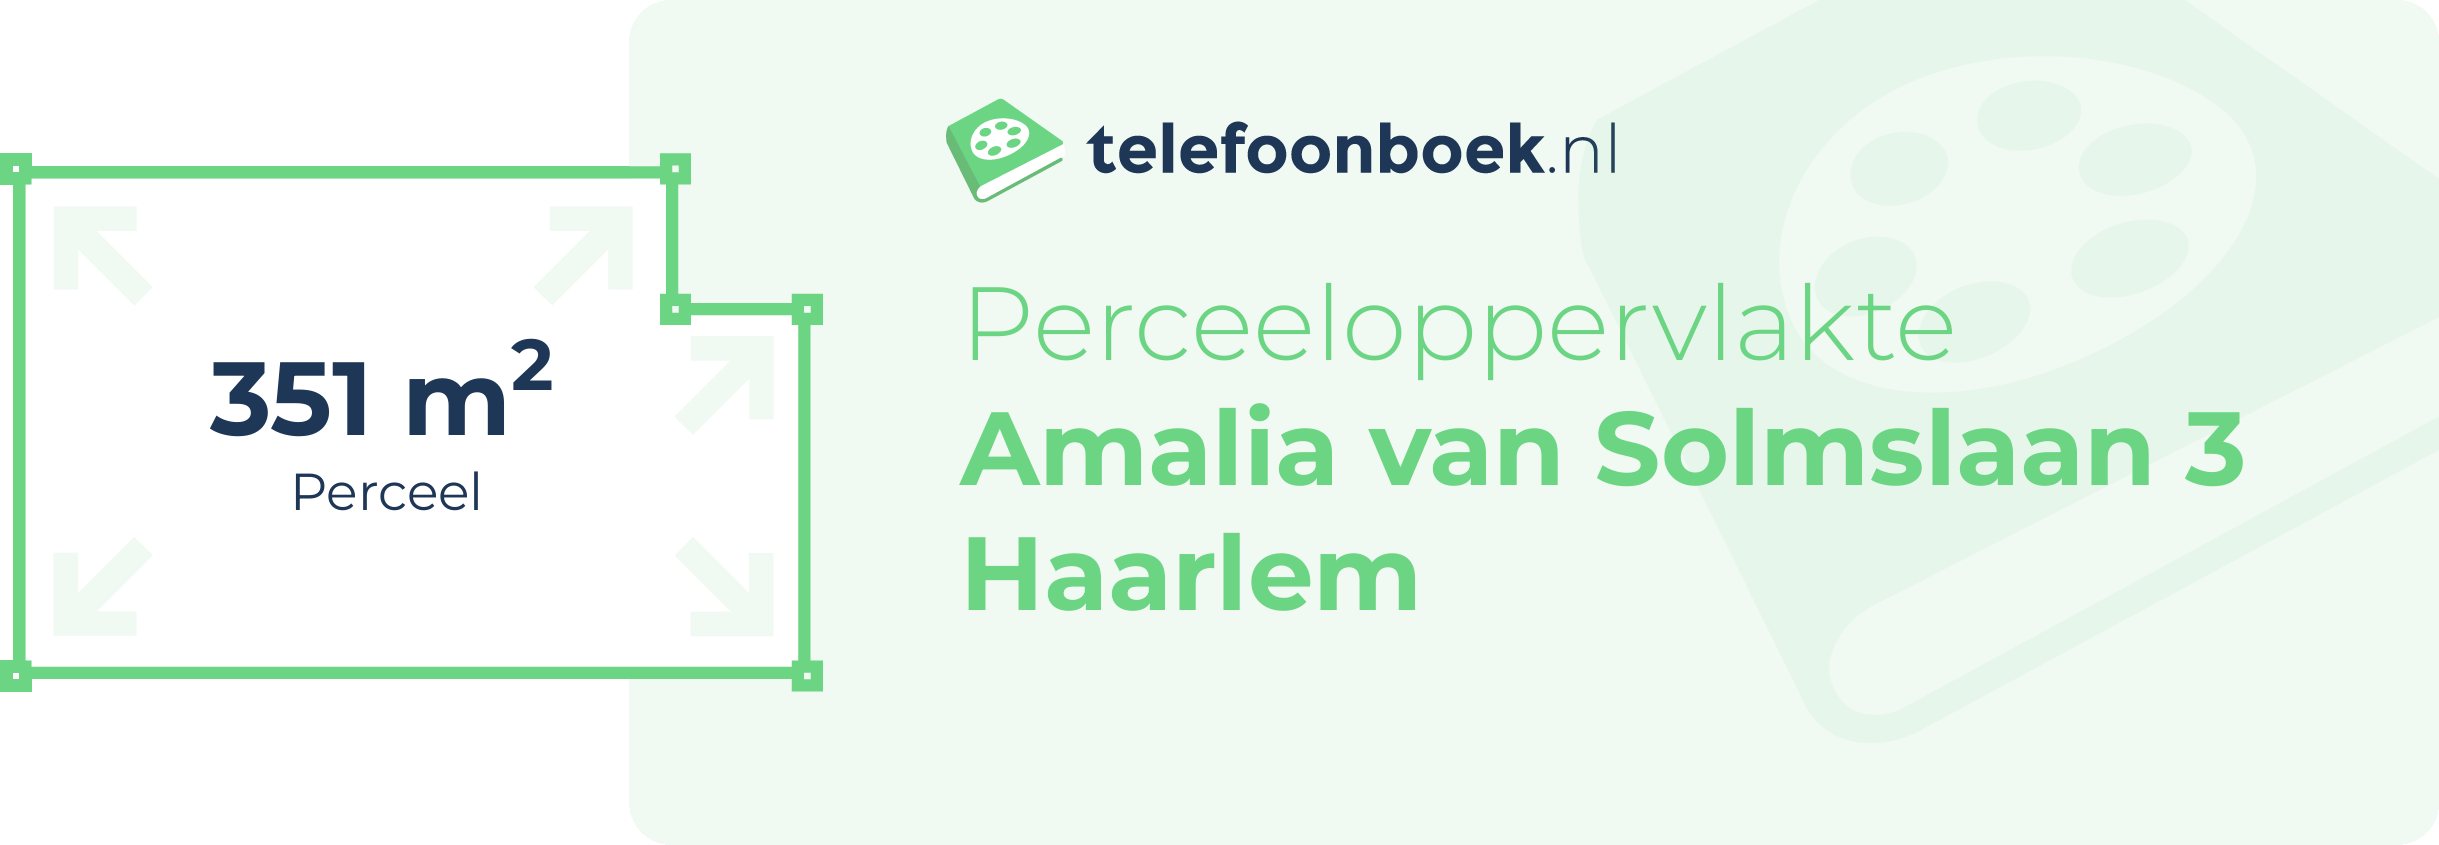 Perceeloppervlakte Amalia Van Solmslaan 3 Haarlem